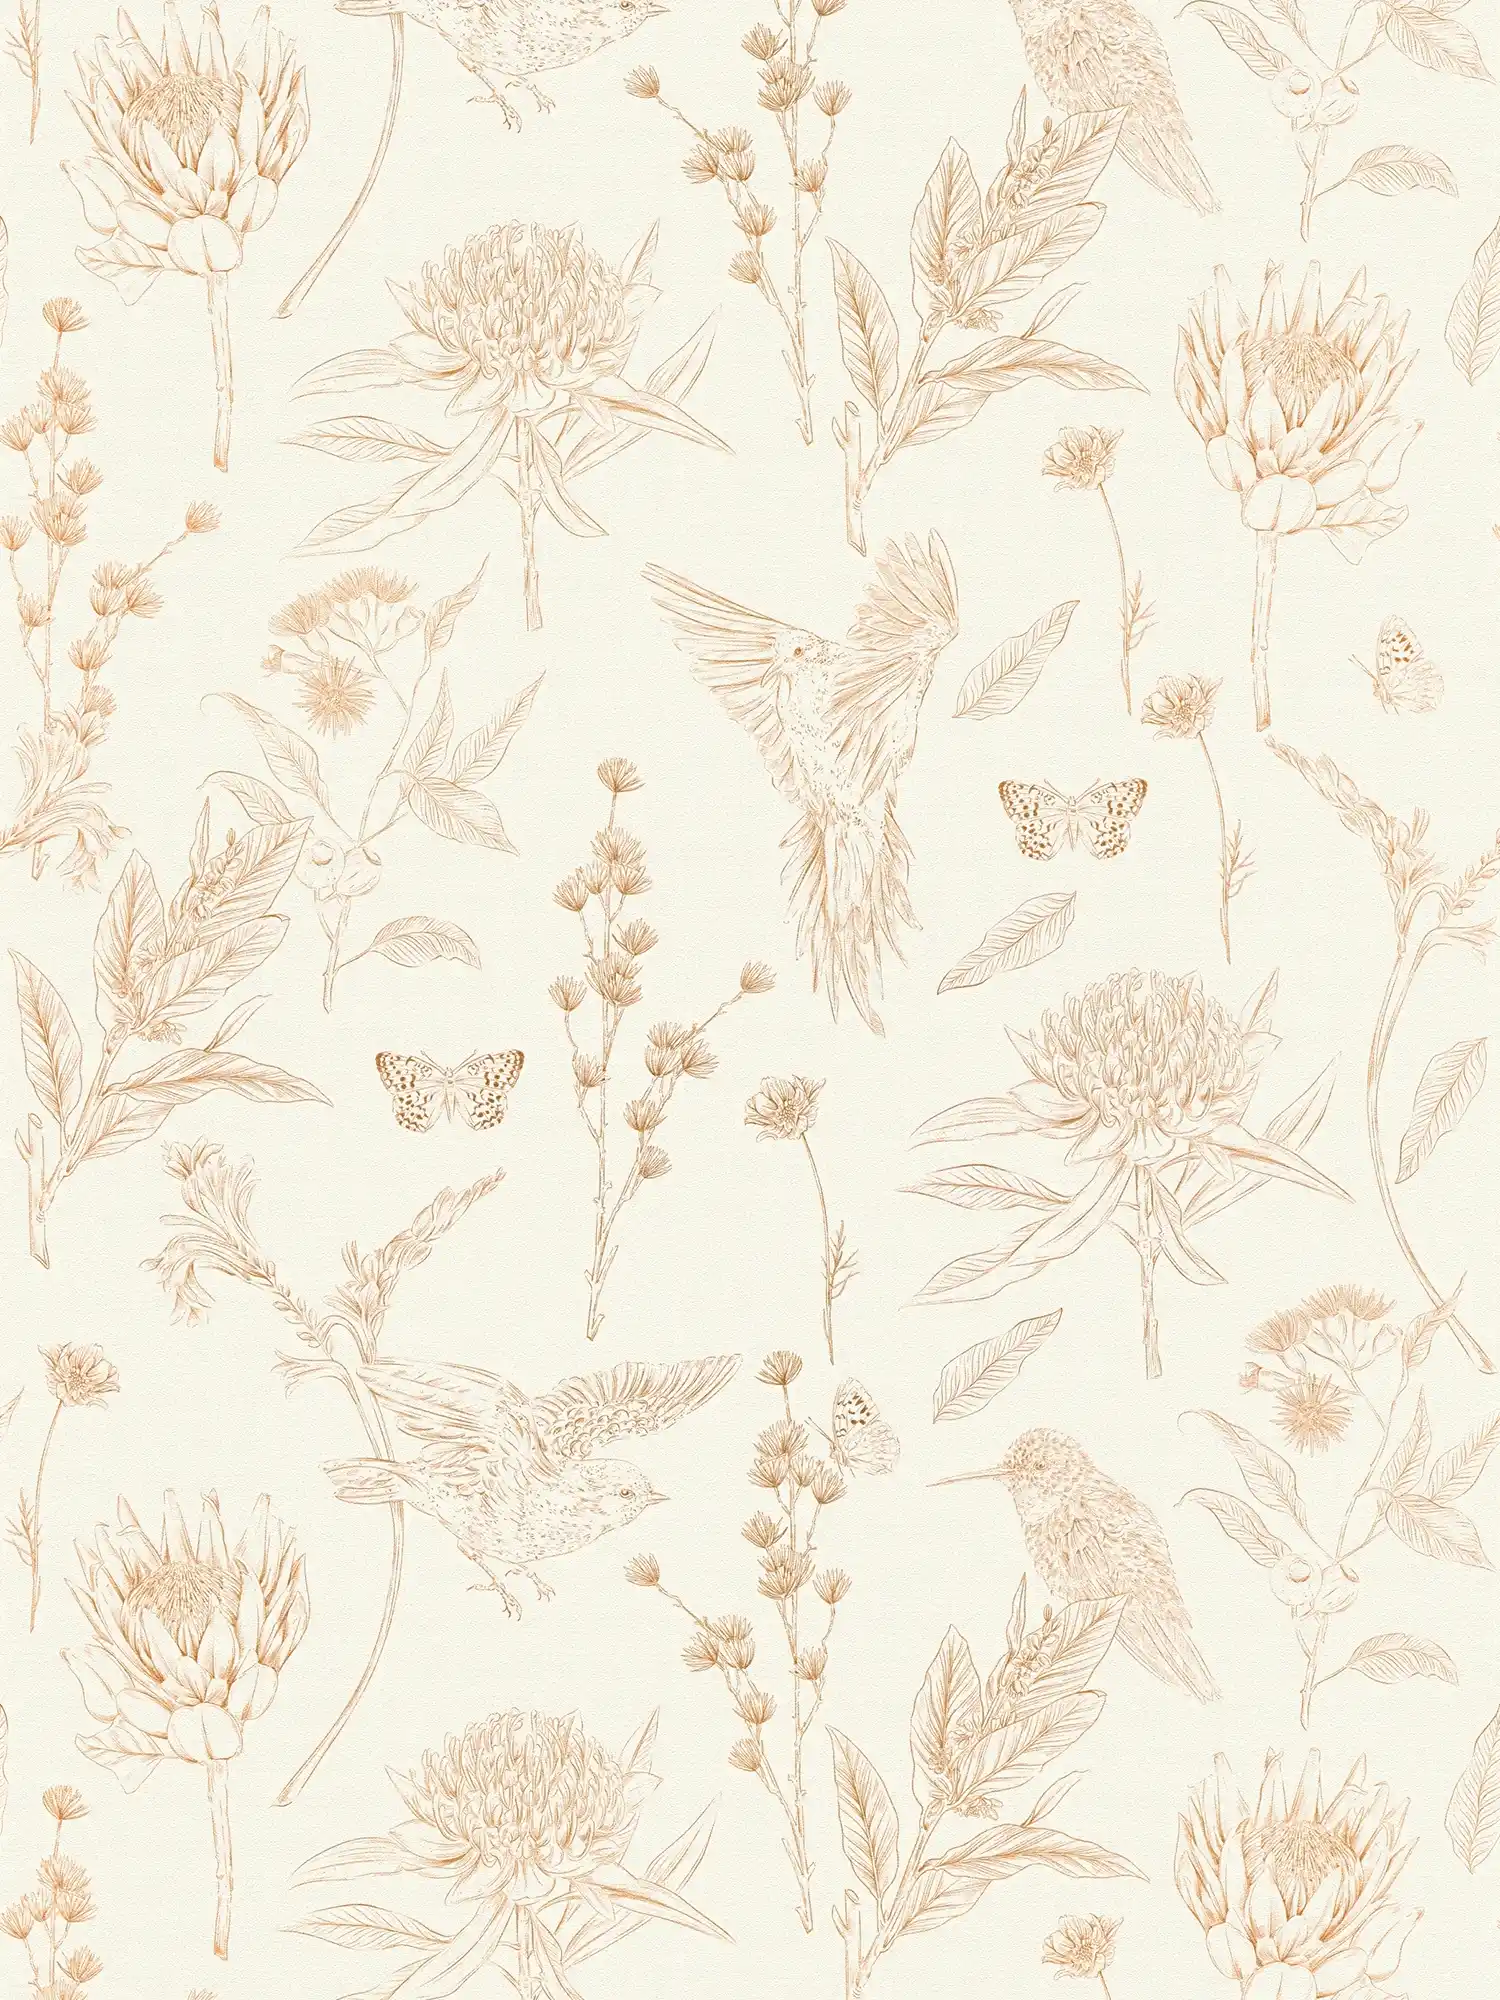 papier peint en papier floral avec feuilles & animaux structuré mat - blanc, marron, beige
